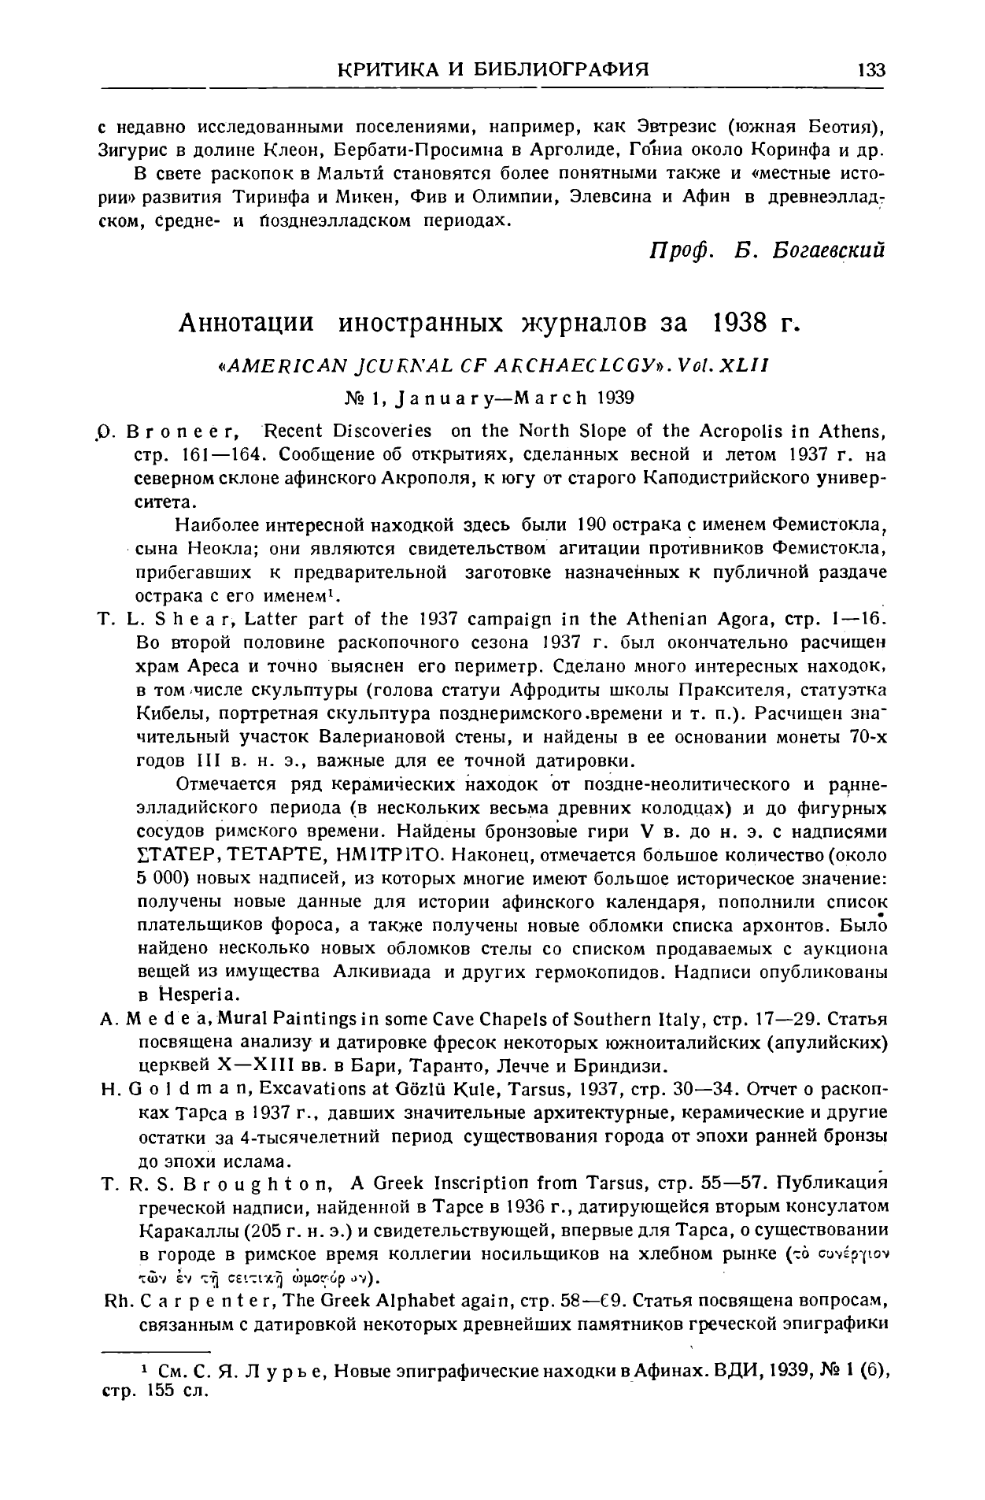 Ельницкий Л.А. – Аннотации иностранных журналов за 1938 г